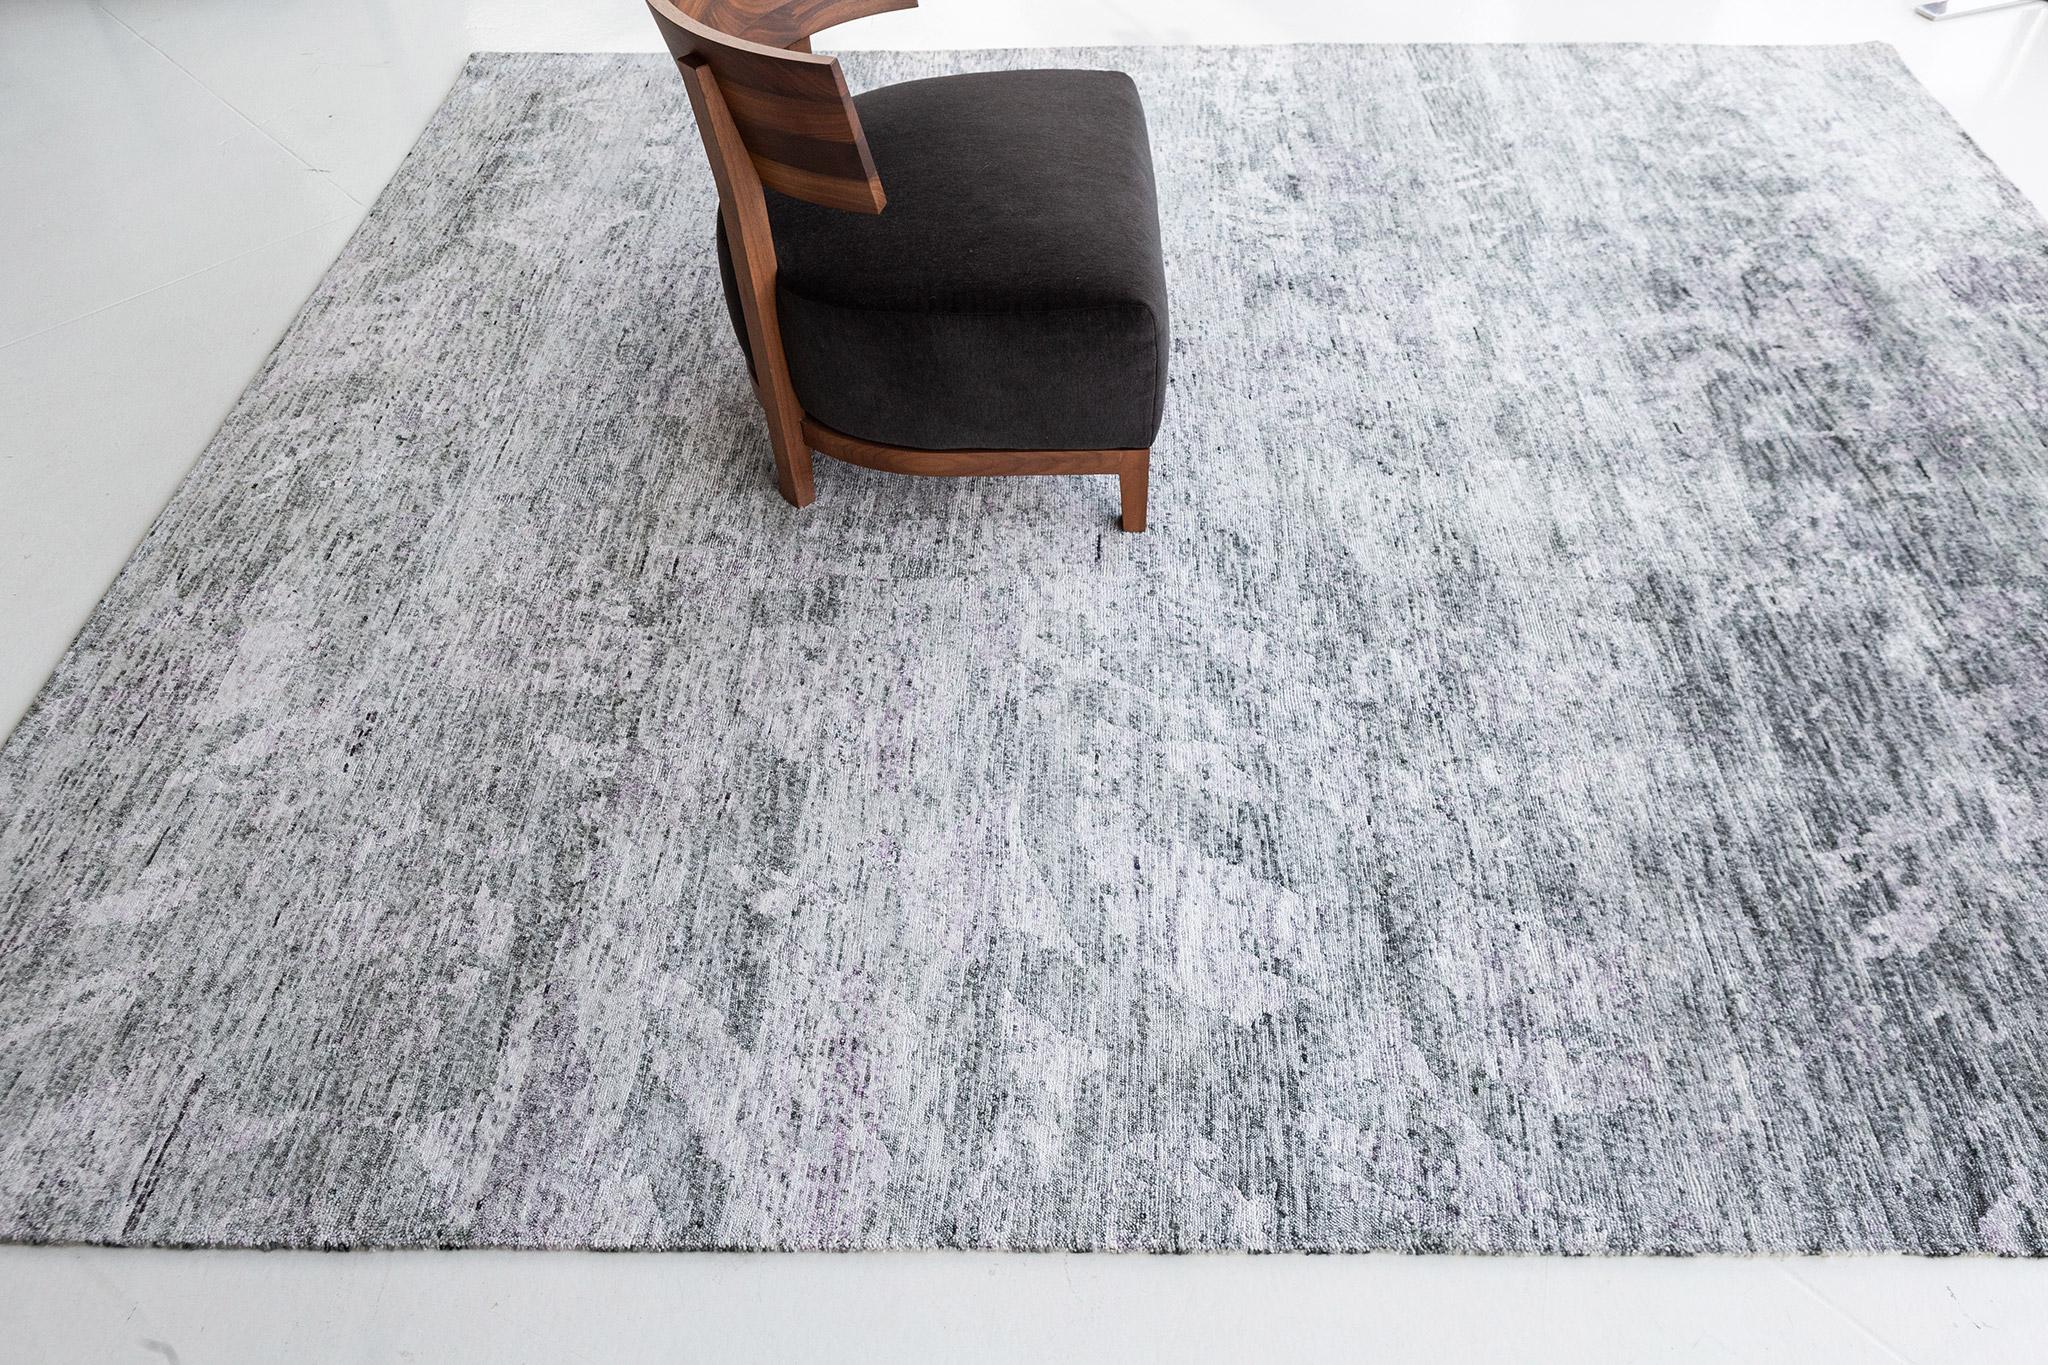 Fideli ist ein Bambus-Seidenteppich in einer zeitlosen Mischung aus Grau und Weiß. Dramatische abstrakte Wellen von Details machen diesen modernen Teppich zufriedenstellender für Ihre Räume. Perfekt für eine Wohnung mit einer minimalistischen und